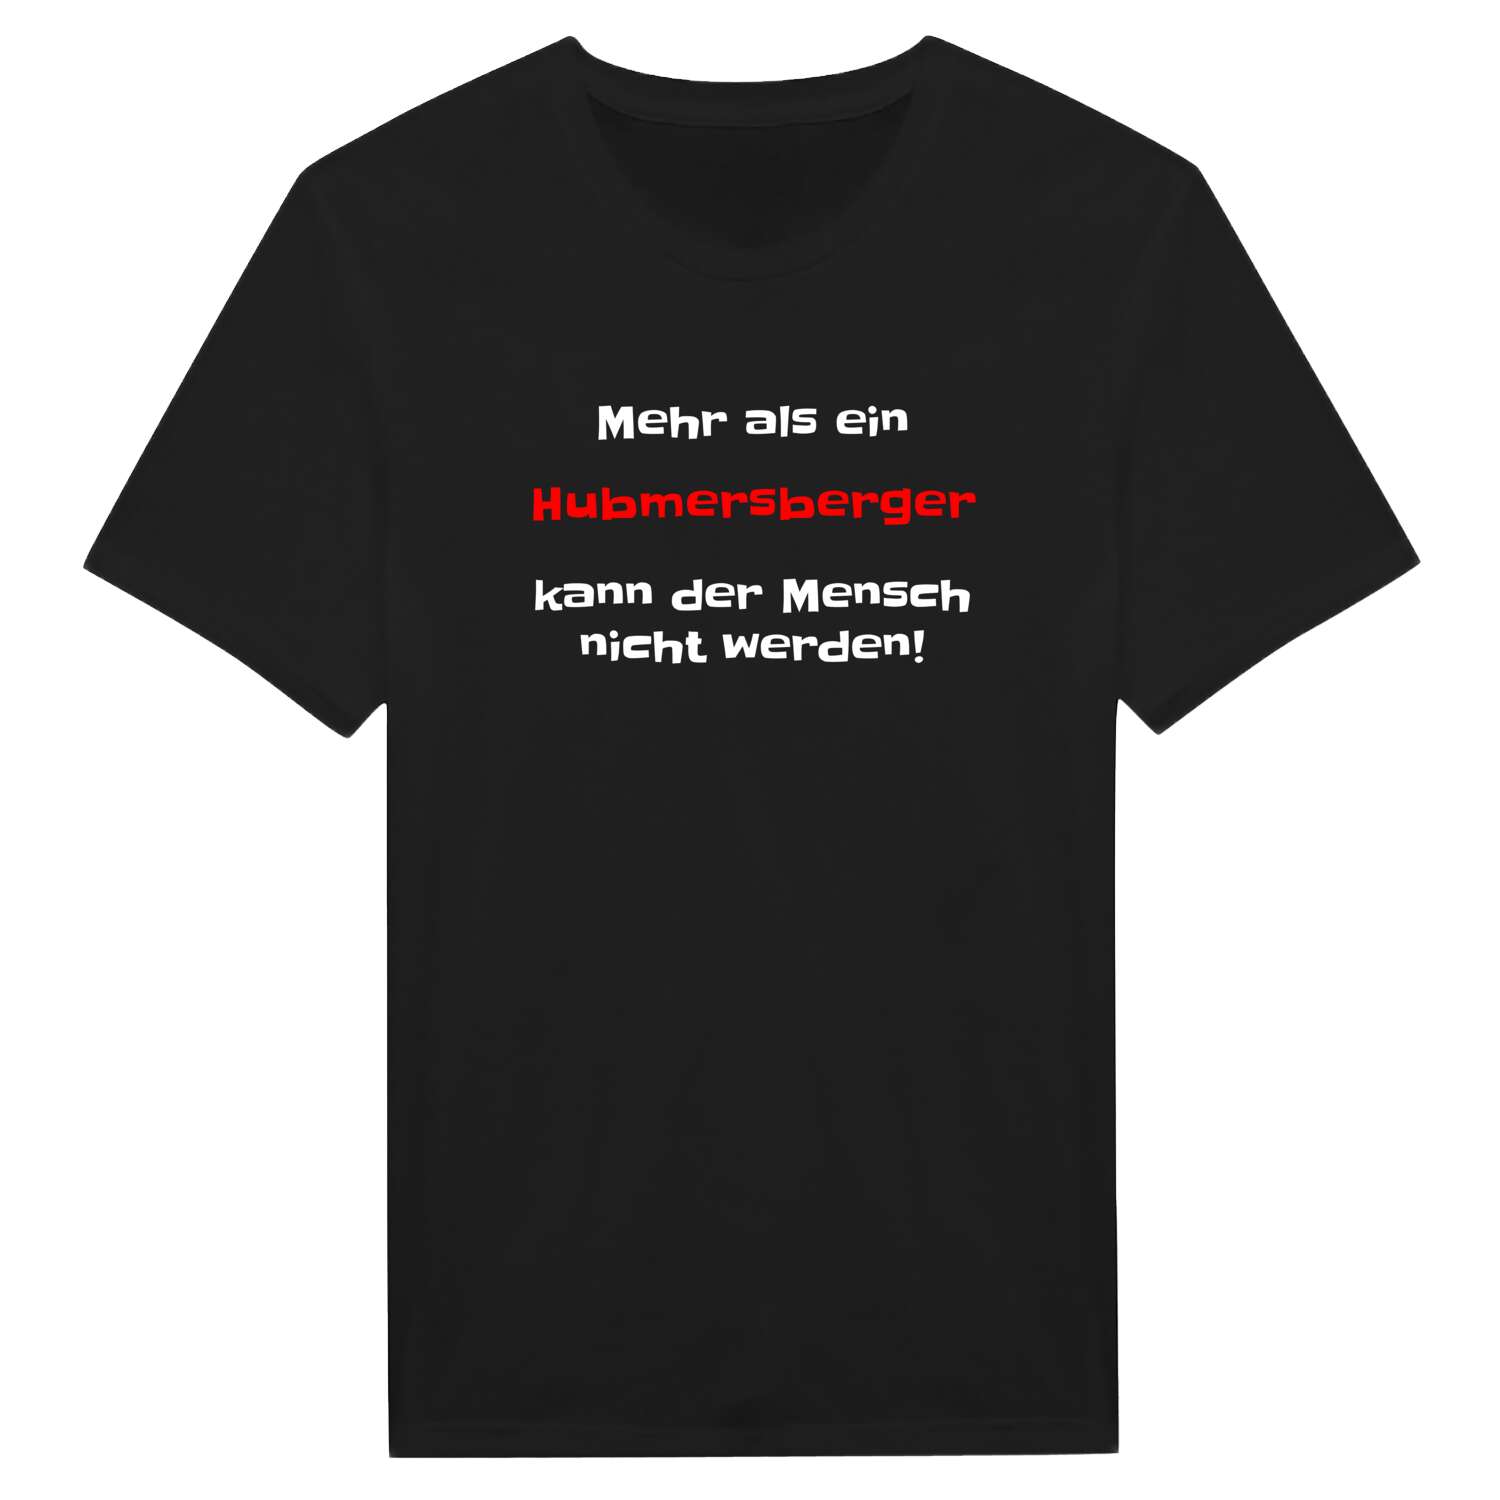 Hubmersberg T-Shirt »Mehr als ein«